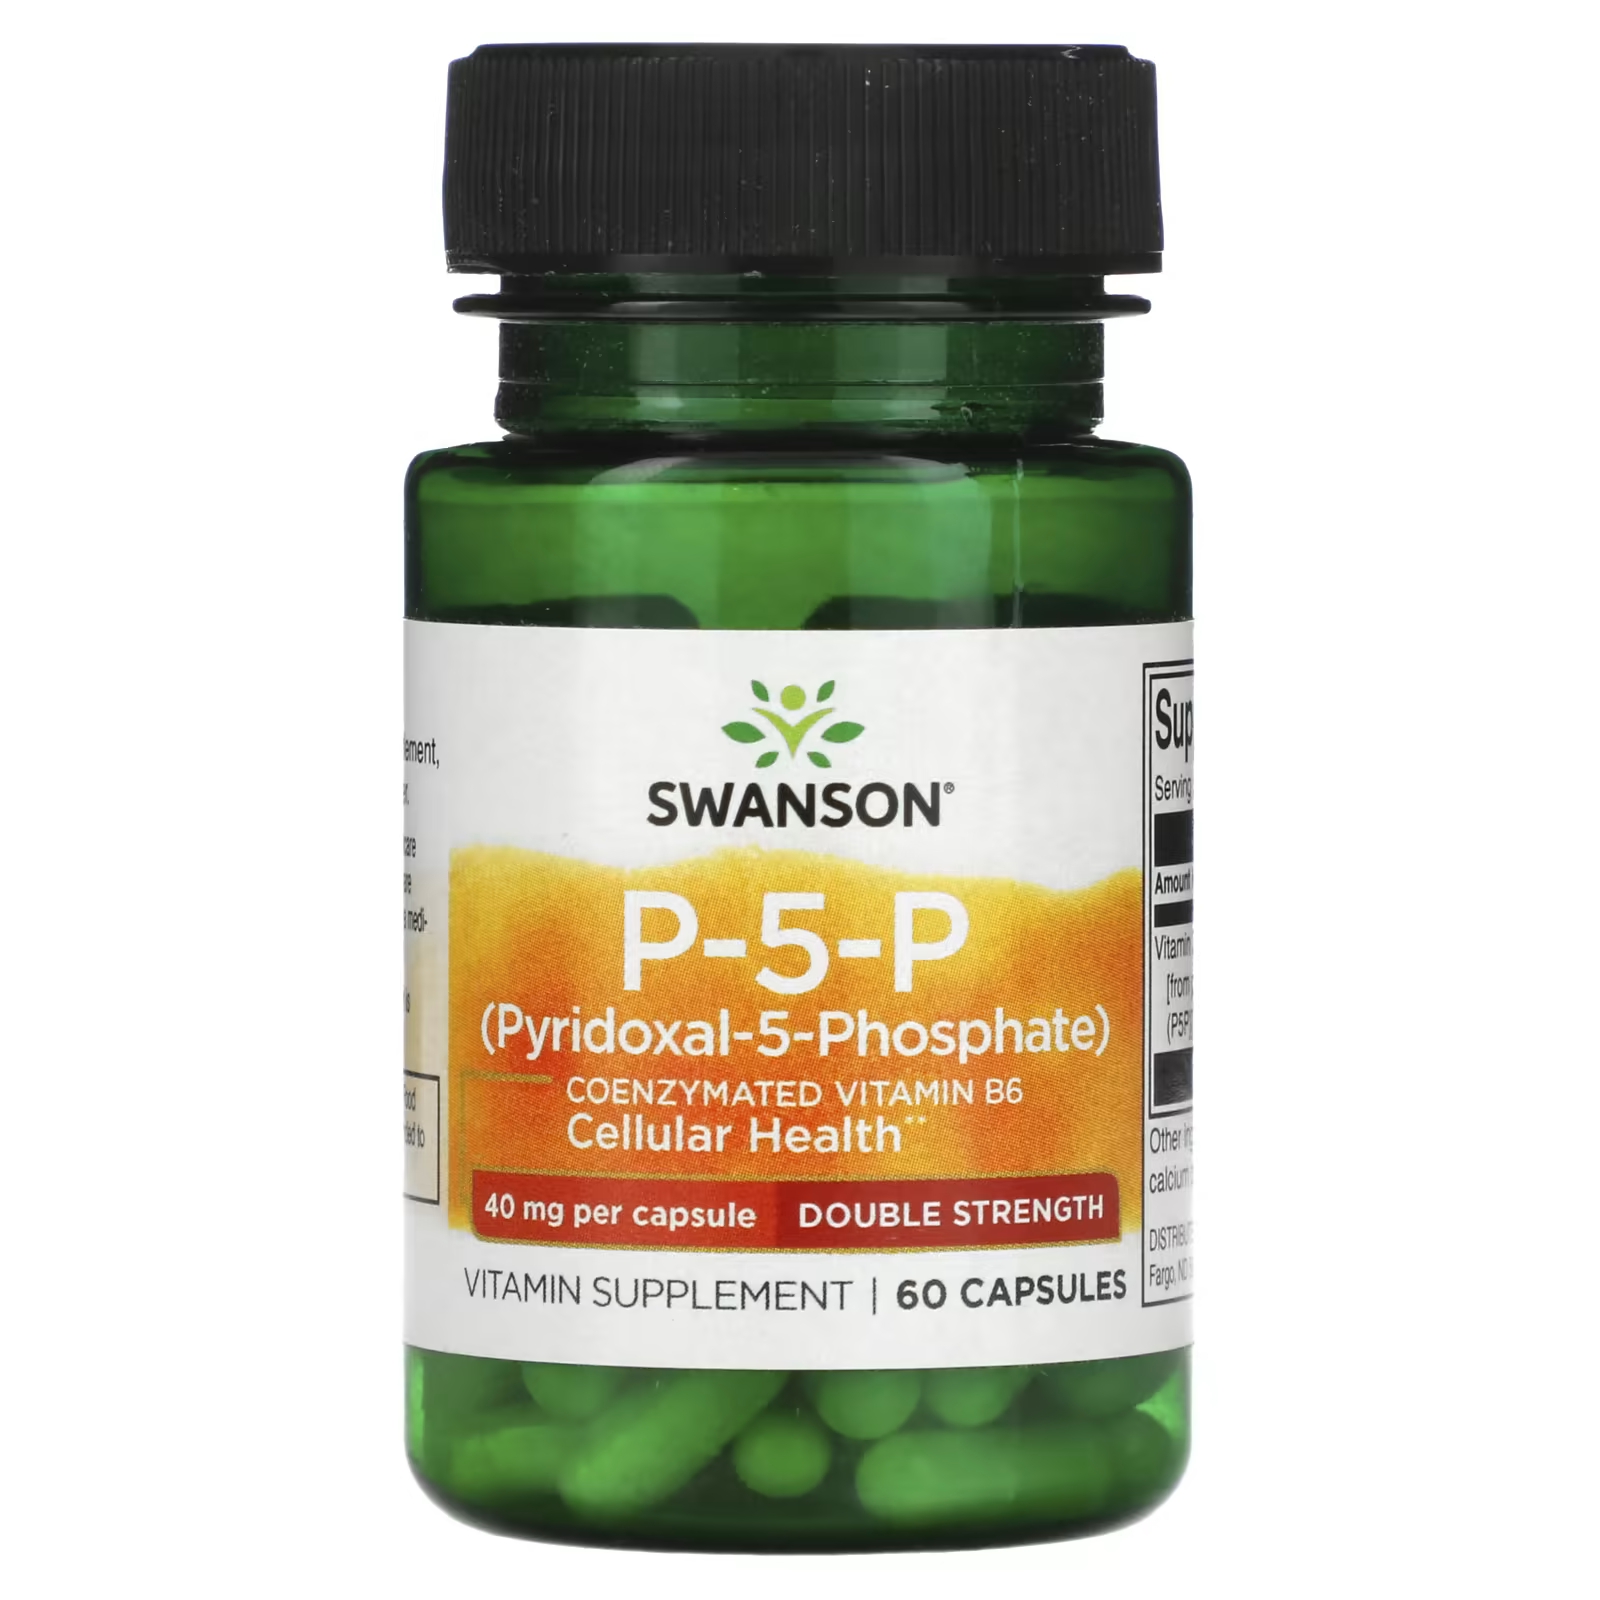 Биологически активная добавка Swanson P-5-P двойная сила, 40 мг., 60 капсул swanson p 5 p двойная сила действия 40 мг в капсуле 60 капсул